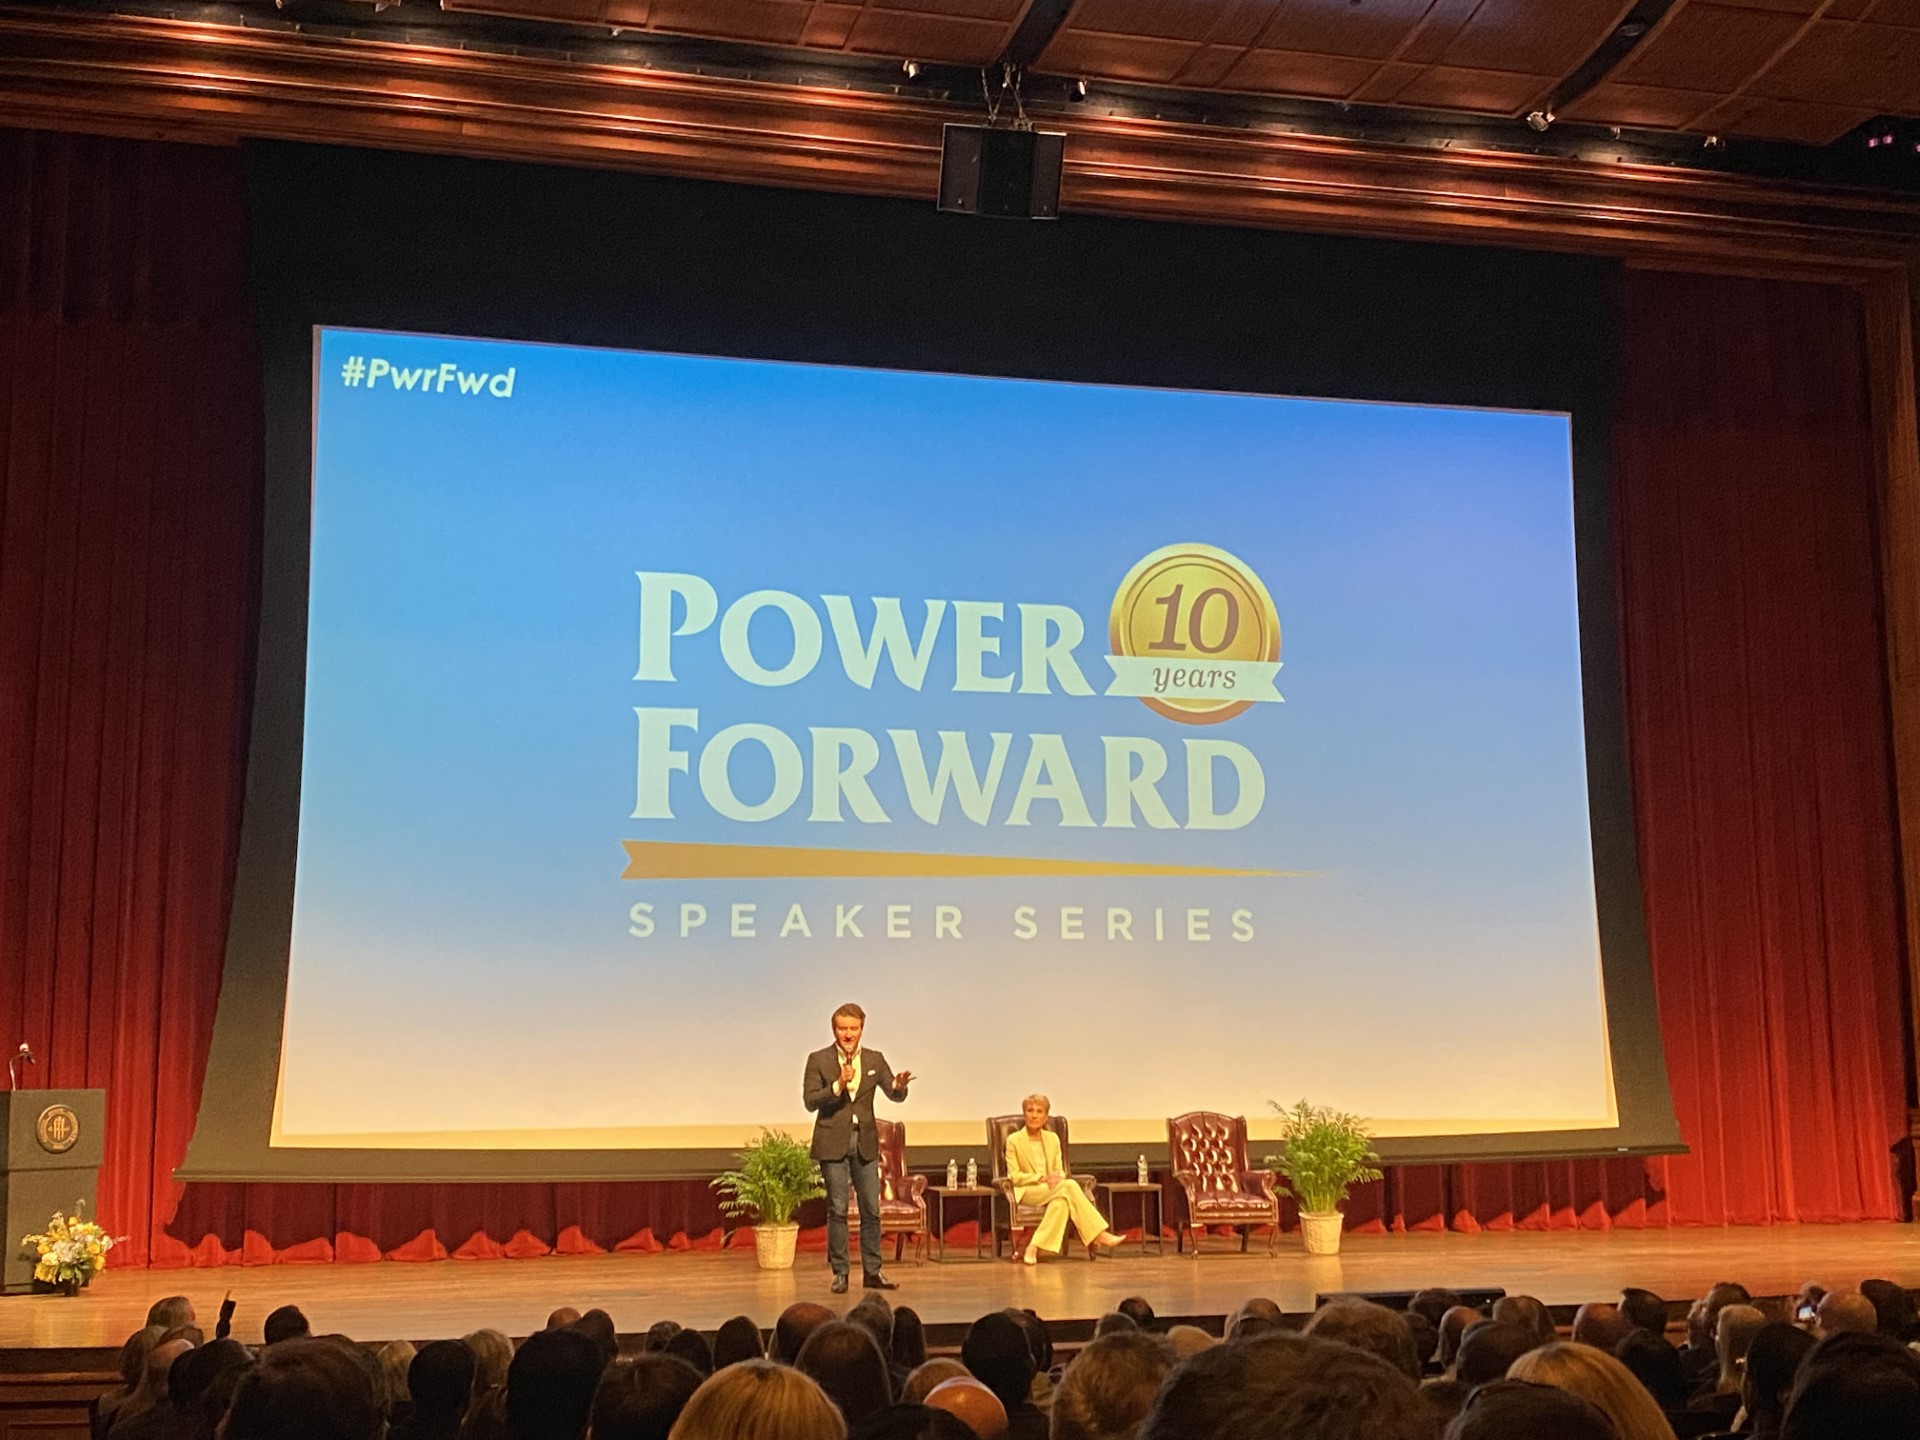 Image of Robert Herjavec and Barbara Corcoran on stage speaking to audience at Power Forward Speker Series.